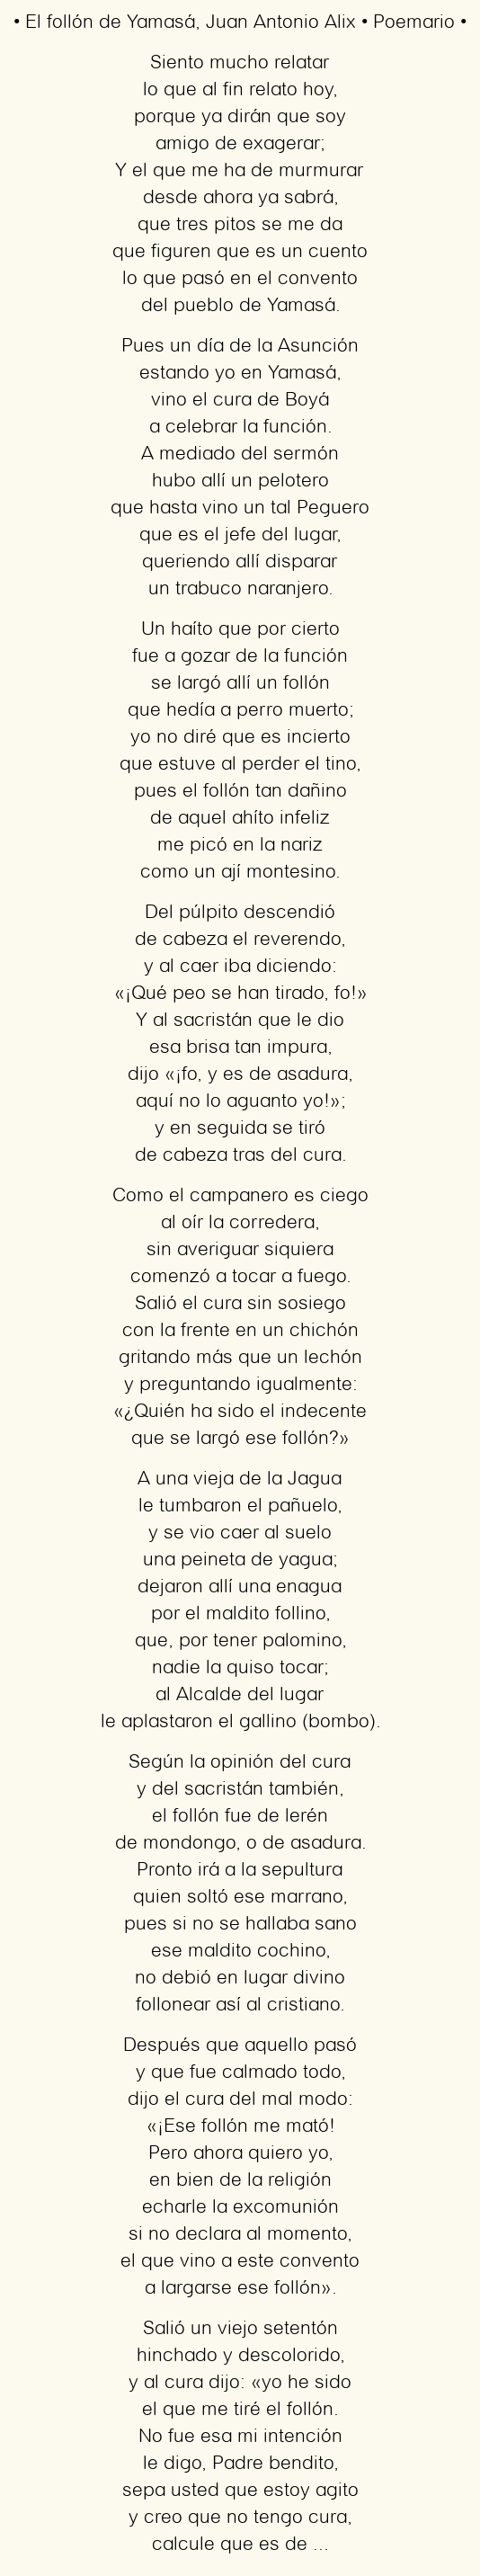 Imagen con el poema El follón de Yamasá, por Juan Antonio Alix